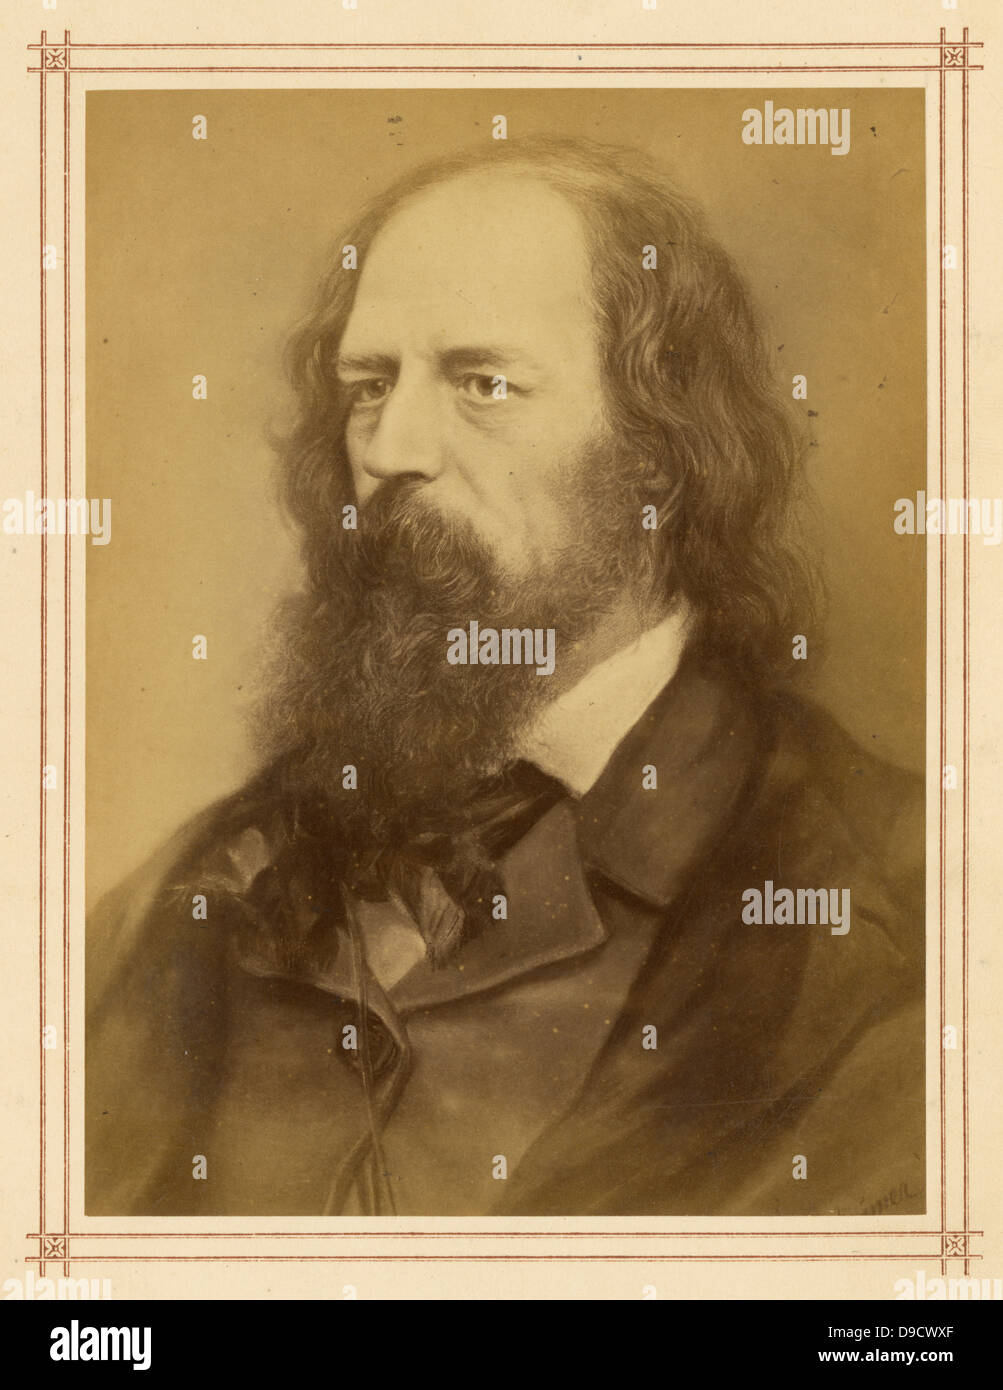 Alfred, lord Tennyson (1809-1892) poète anglais de l'ère victorienne. Il a été nommé poète lauréat en 1850 et reste l'un des plus grand poètes de langue anglaise. Banque D'Images